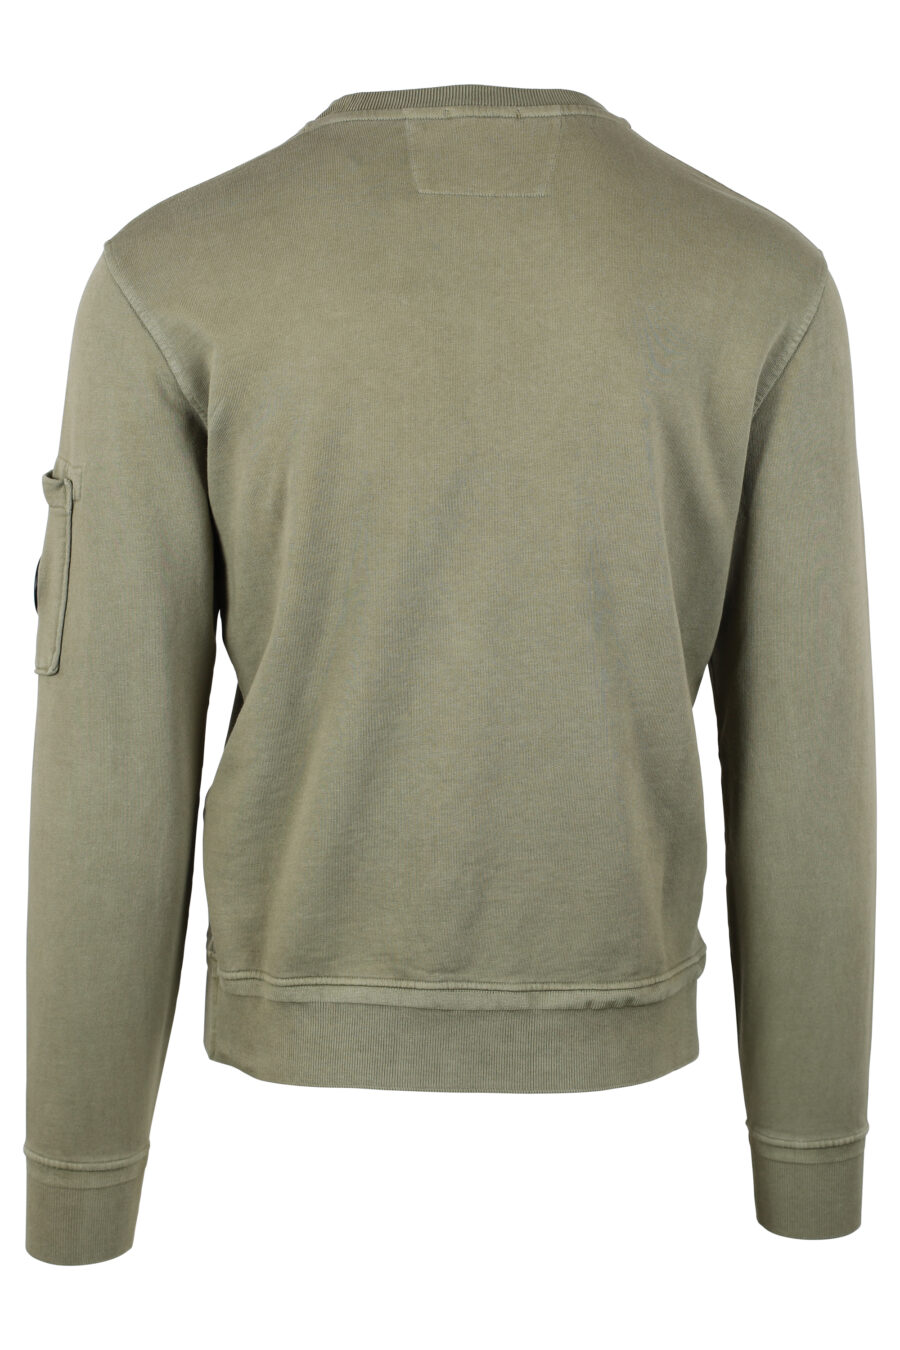 Sweat-shirt vert militaire avec doublure en polaire et mini logo circulaire - IMG 4668